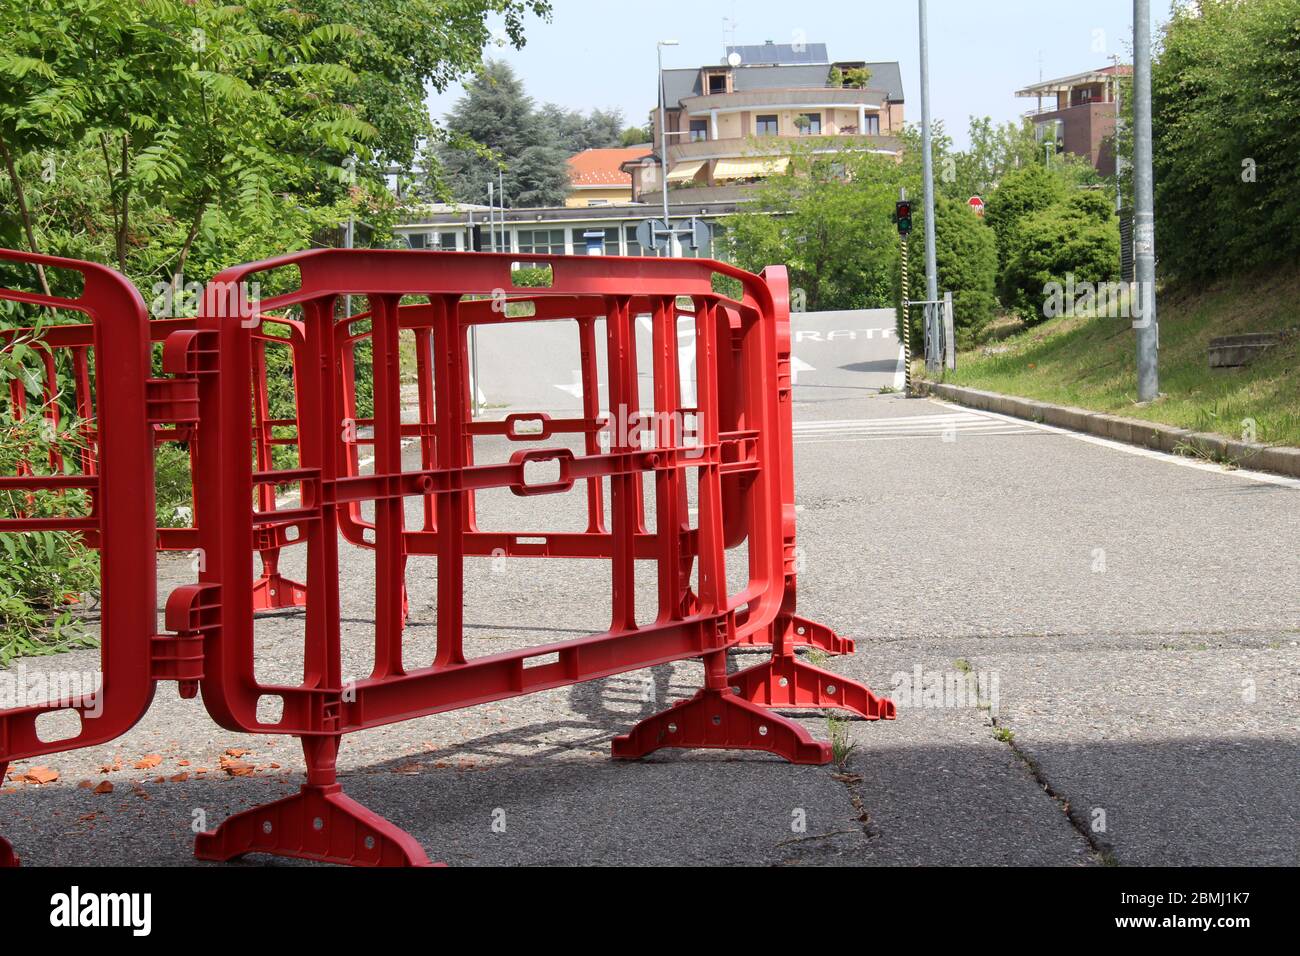 Le barriere delimitano la parte occupata da lavori stradali, materiale plastico e colore rosso. Foto Stock